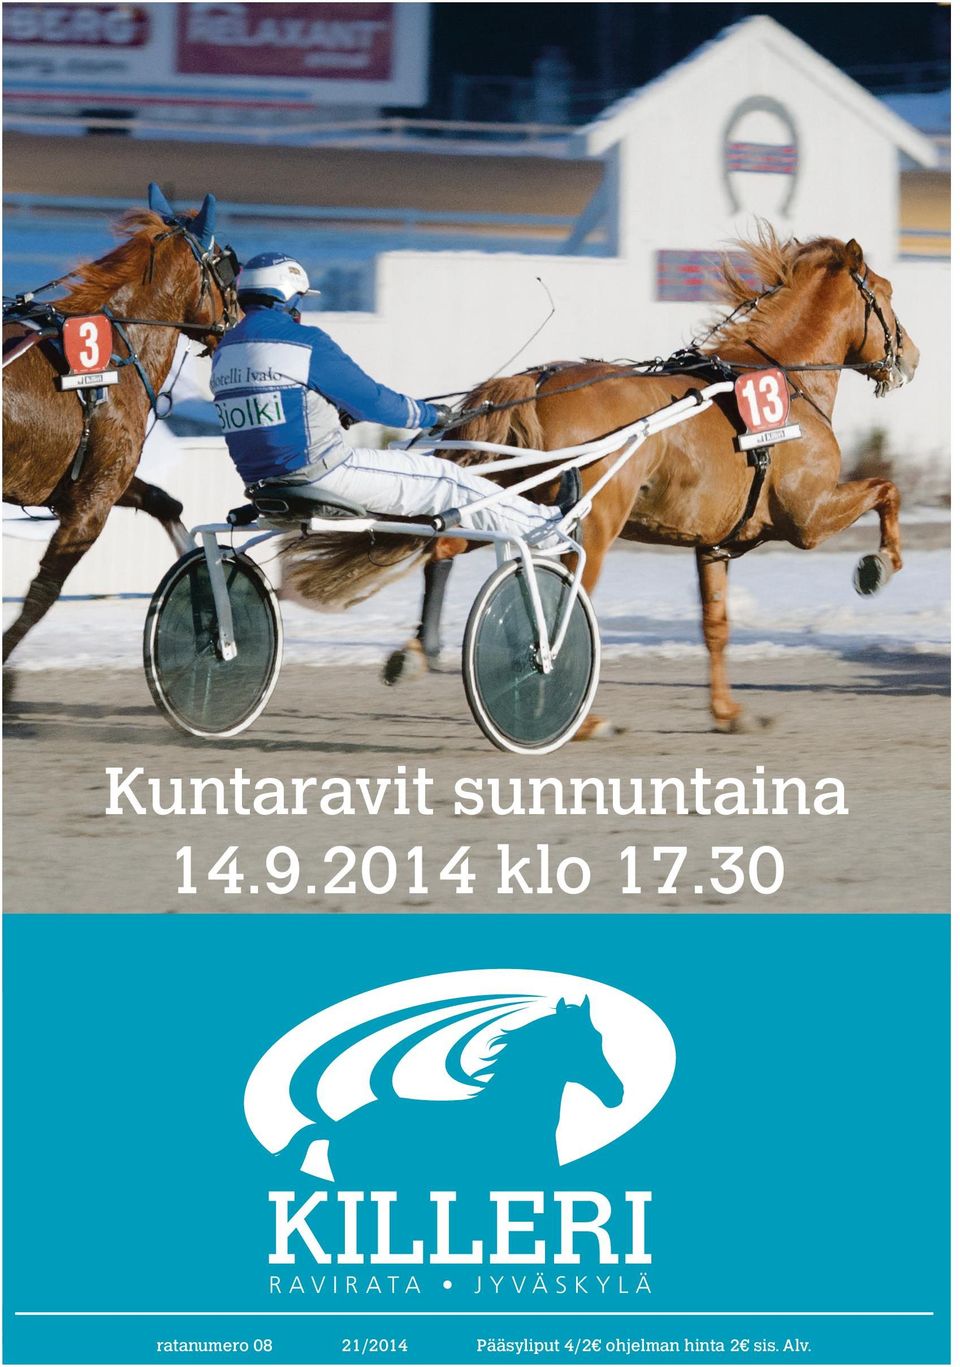 RAVIRATA JYVÄSKYLÄ ratanumero 08 2/204